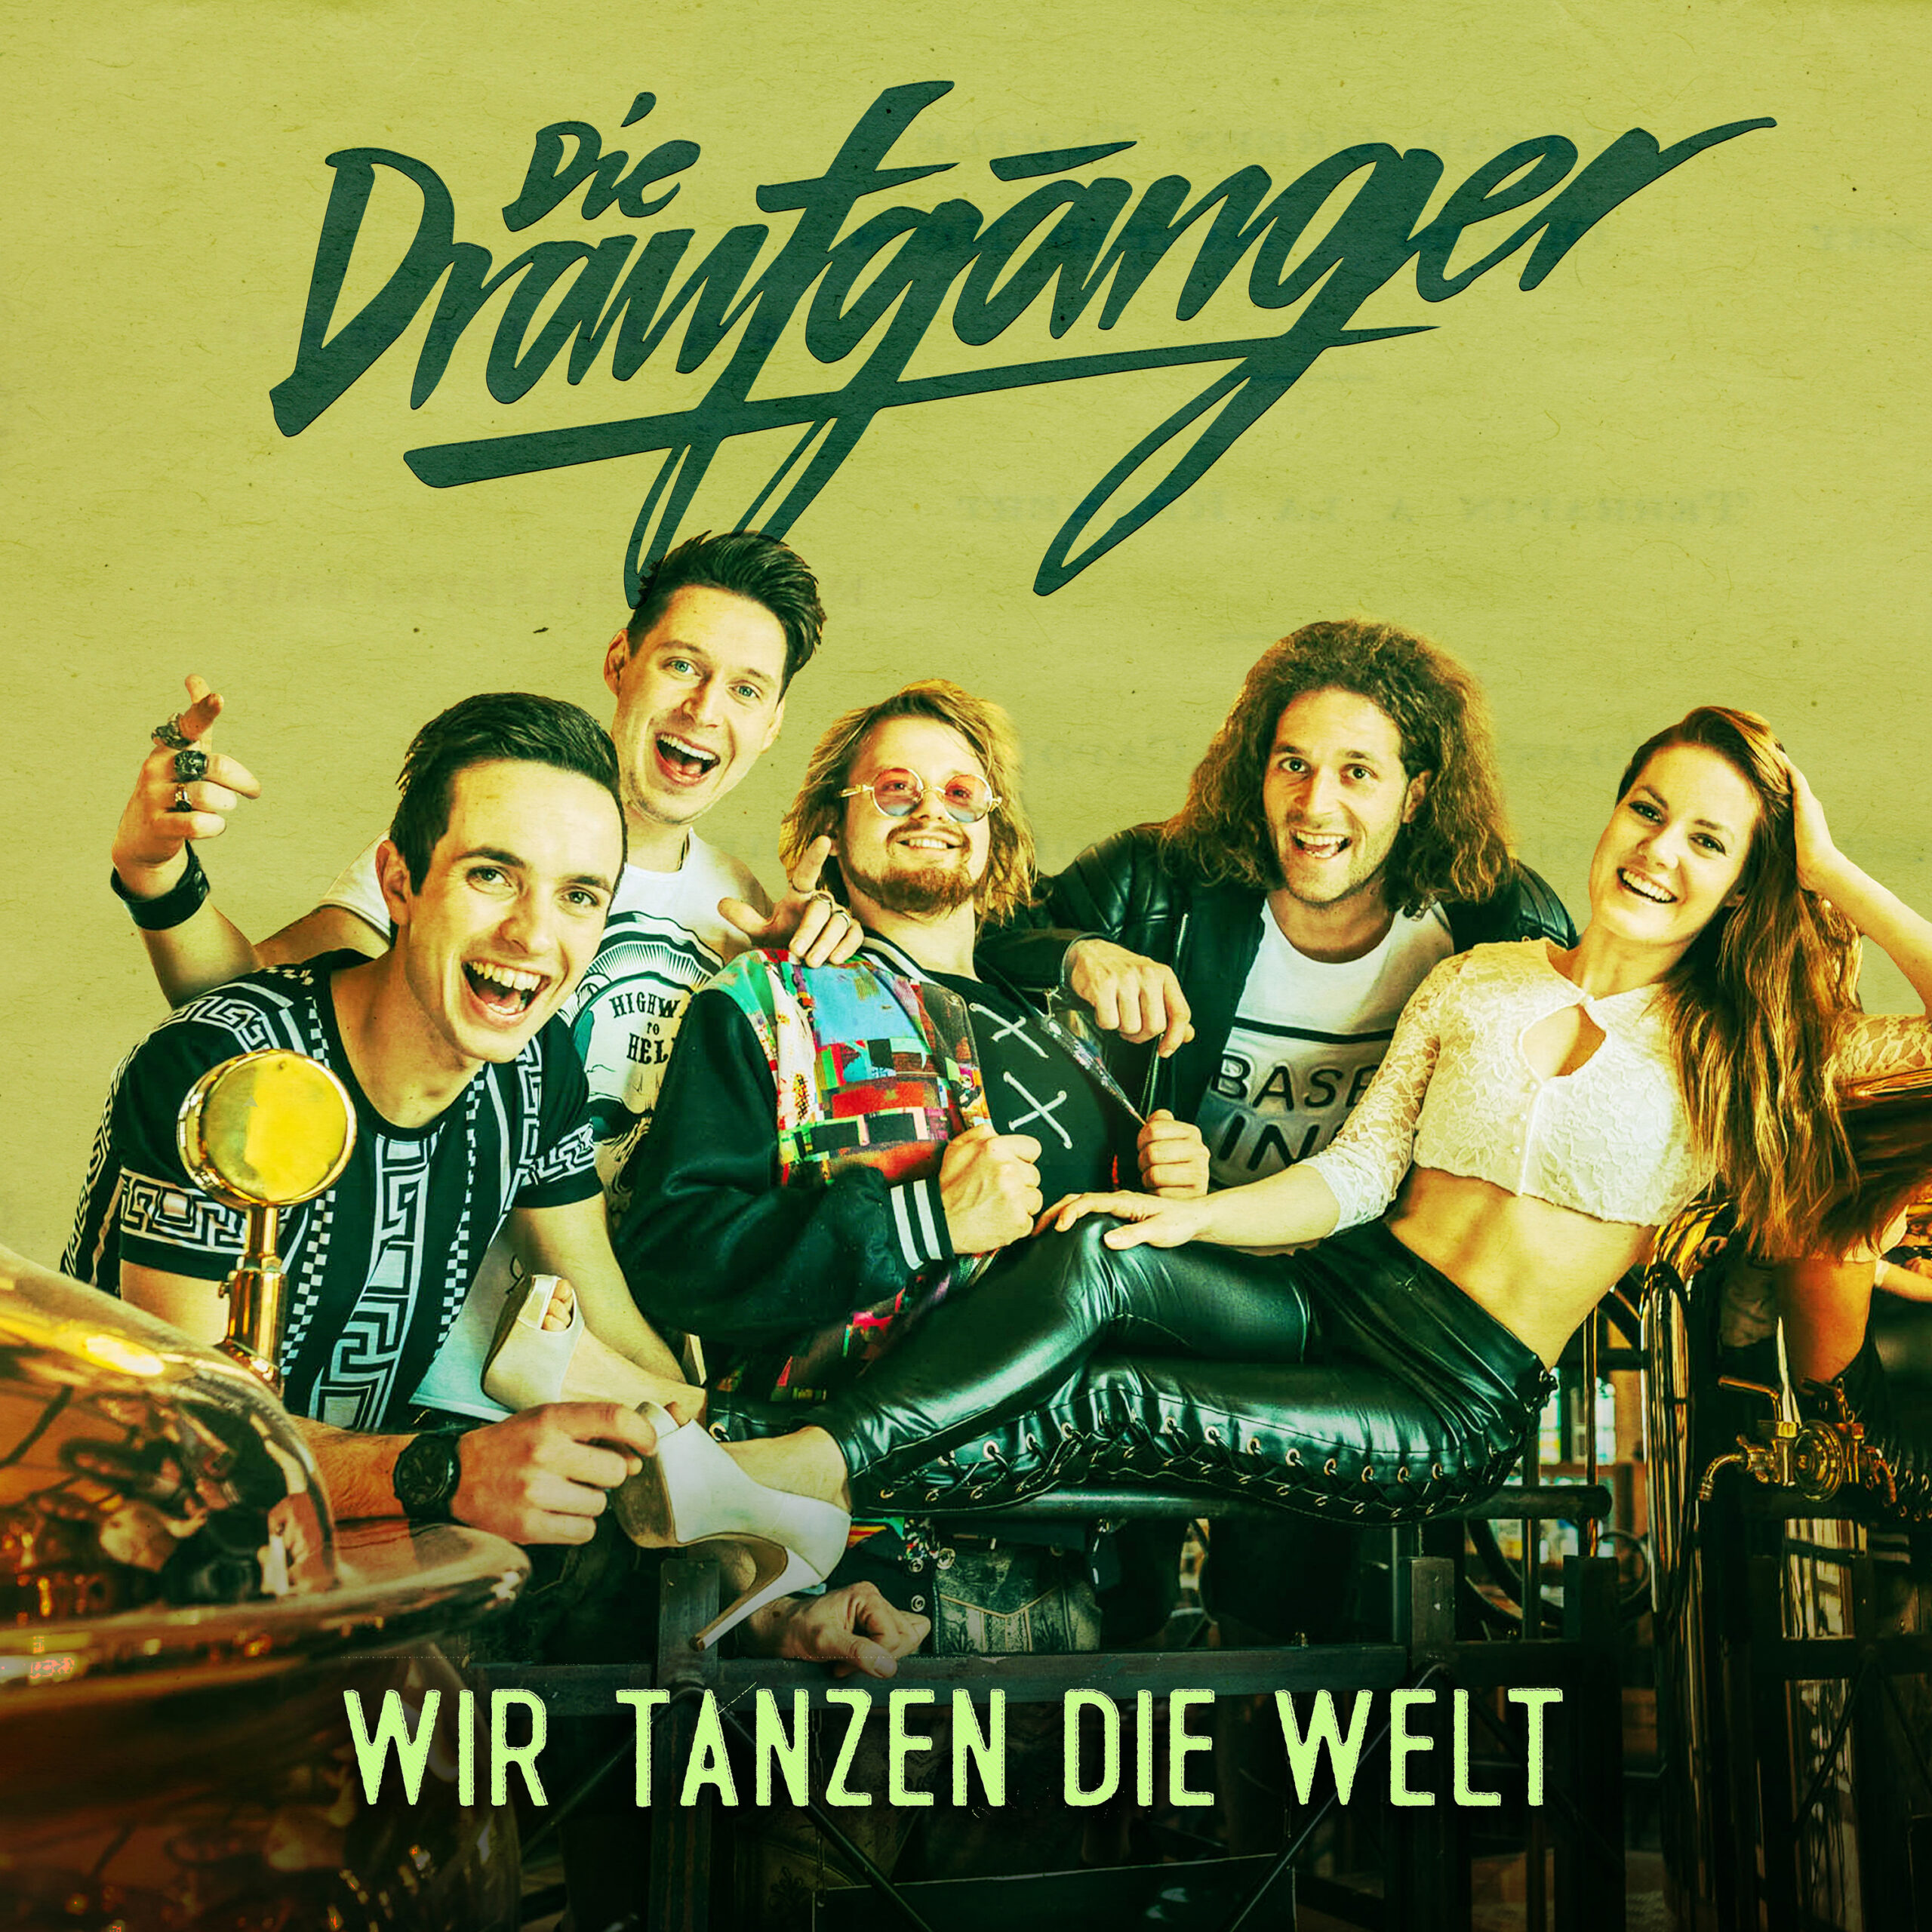 Die Draufgänger: „Wir tanzen die Welt“ – die neue Single